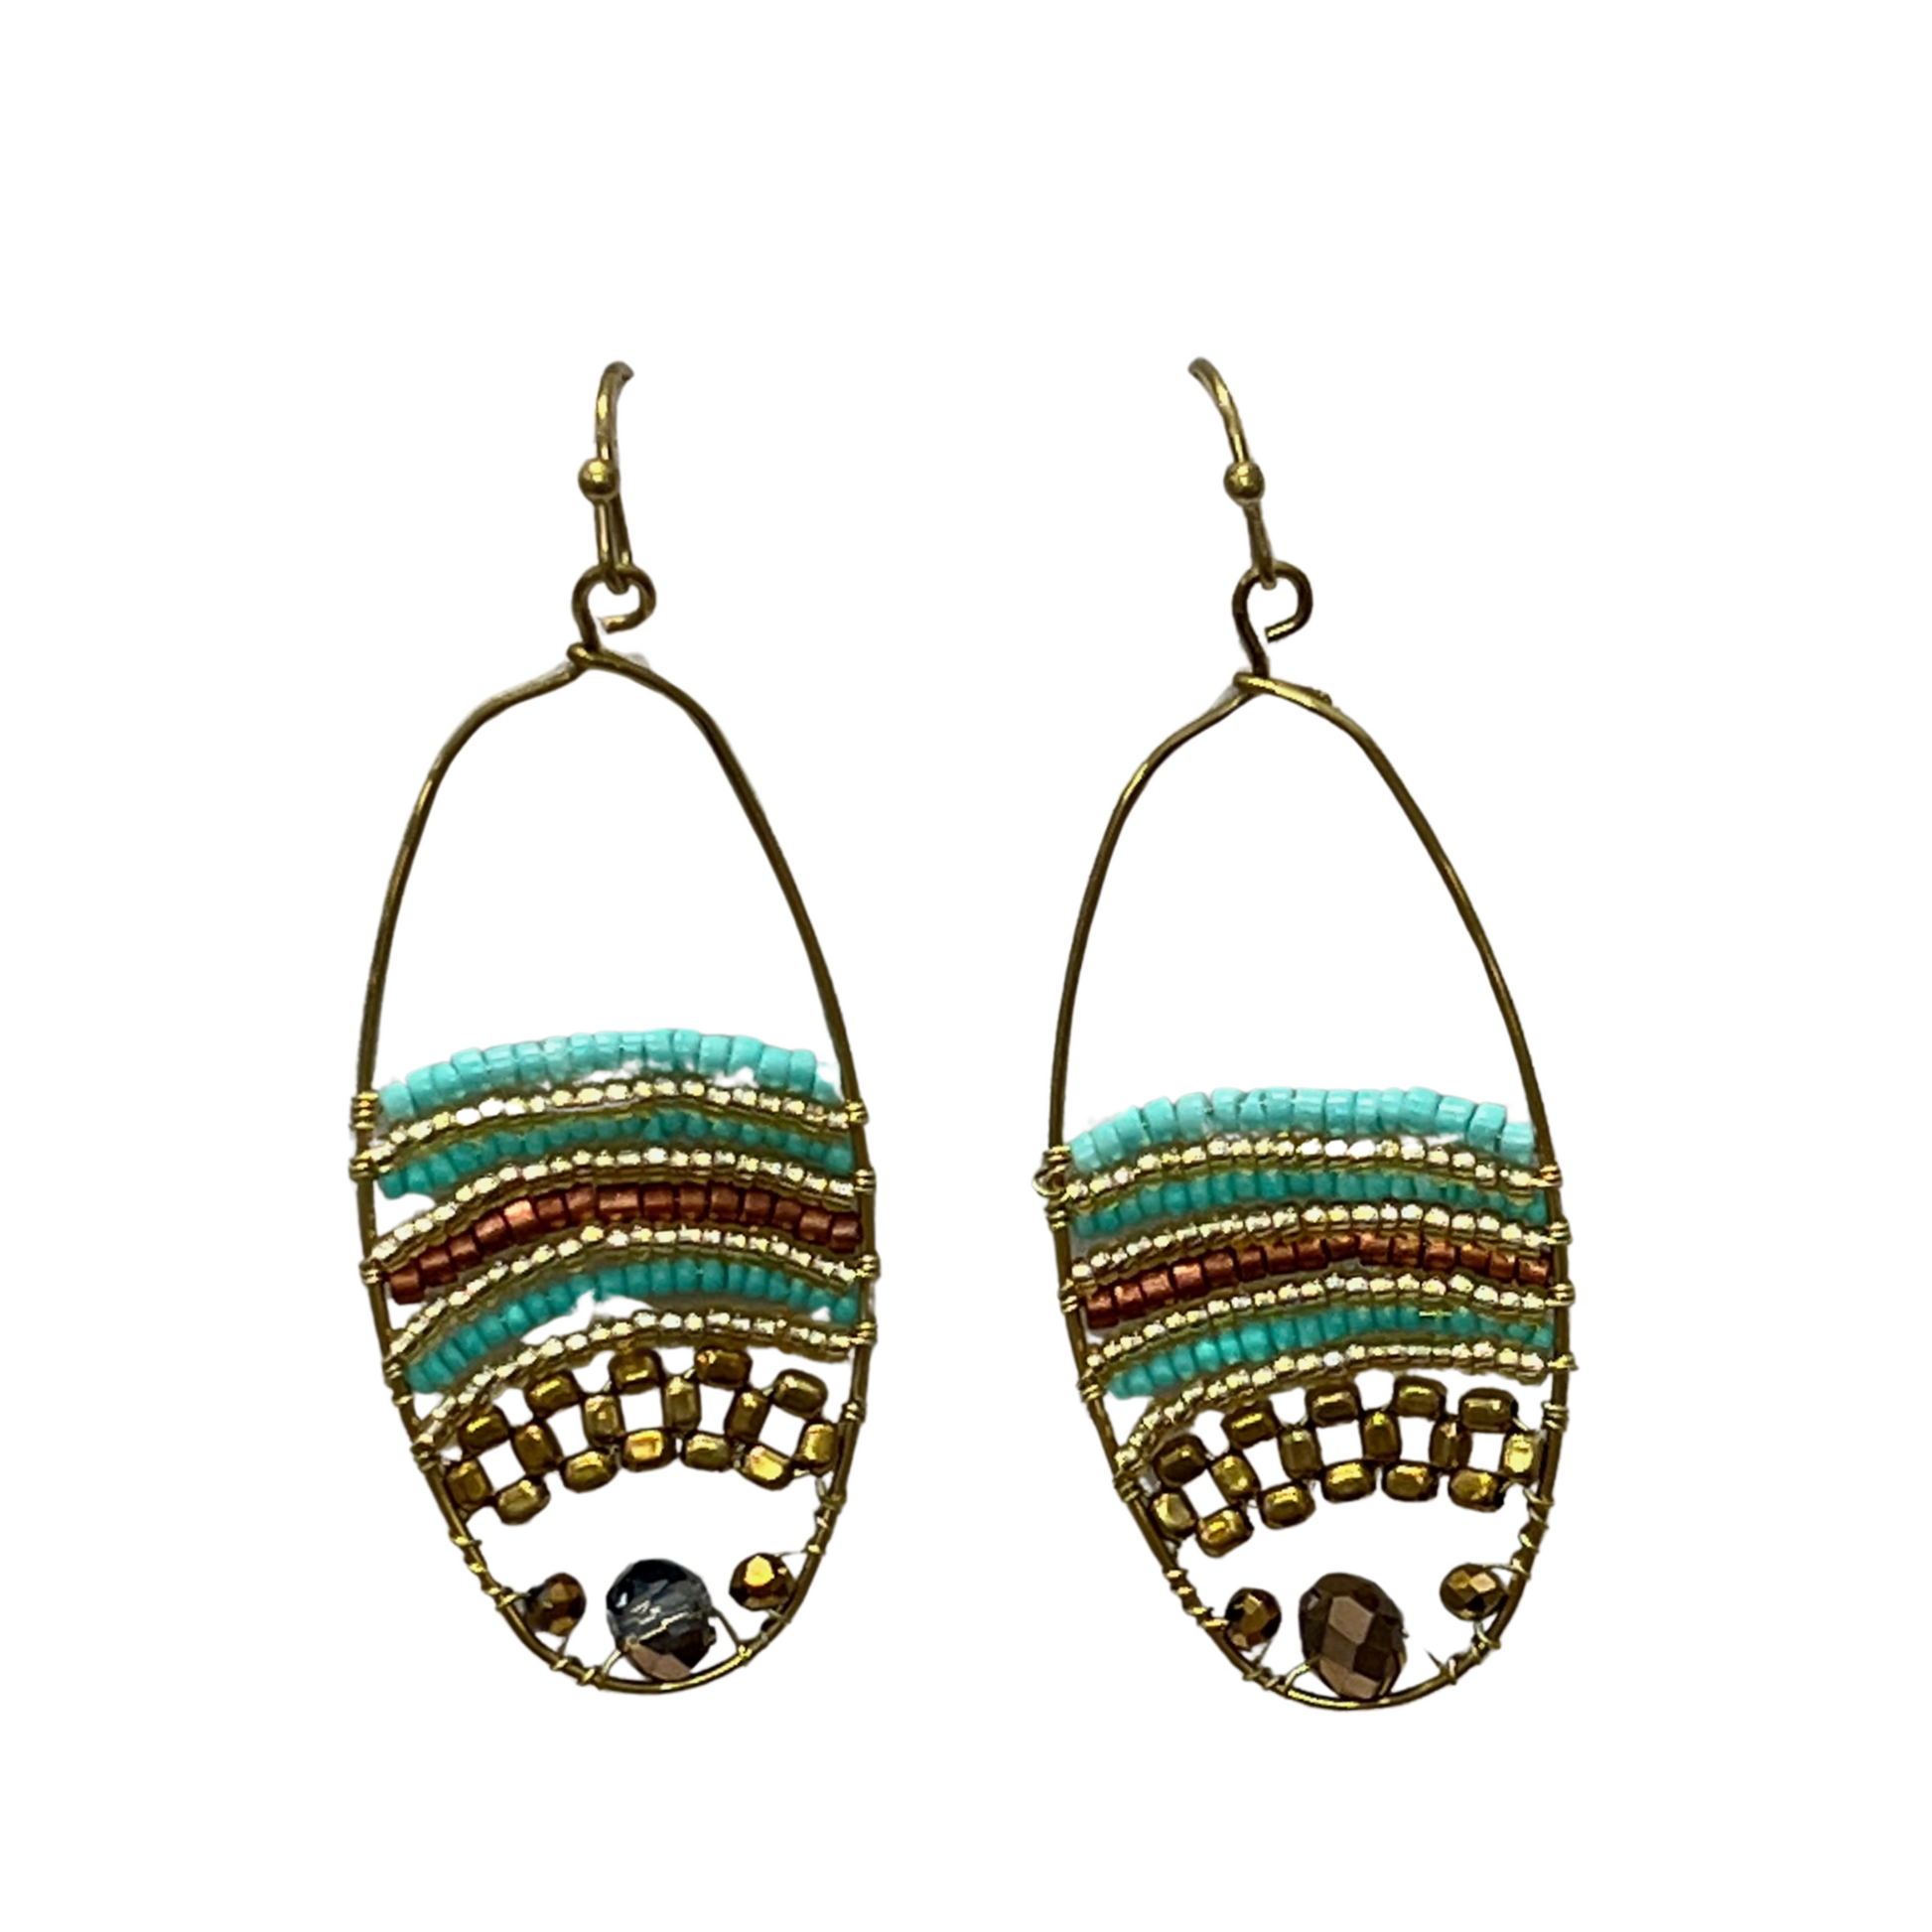 Tribal Dangle earrings in turquoise